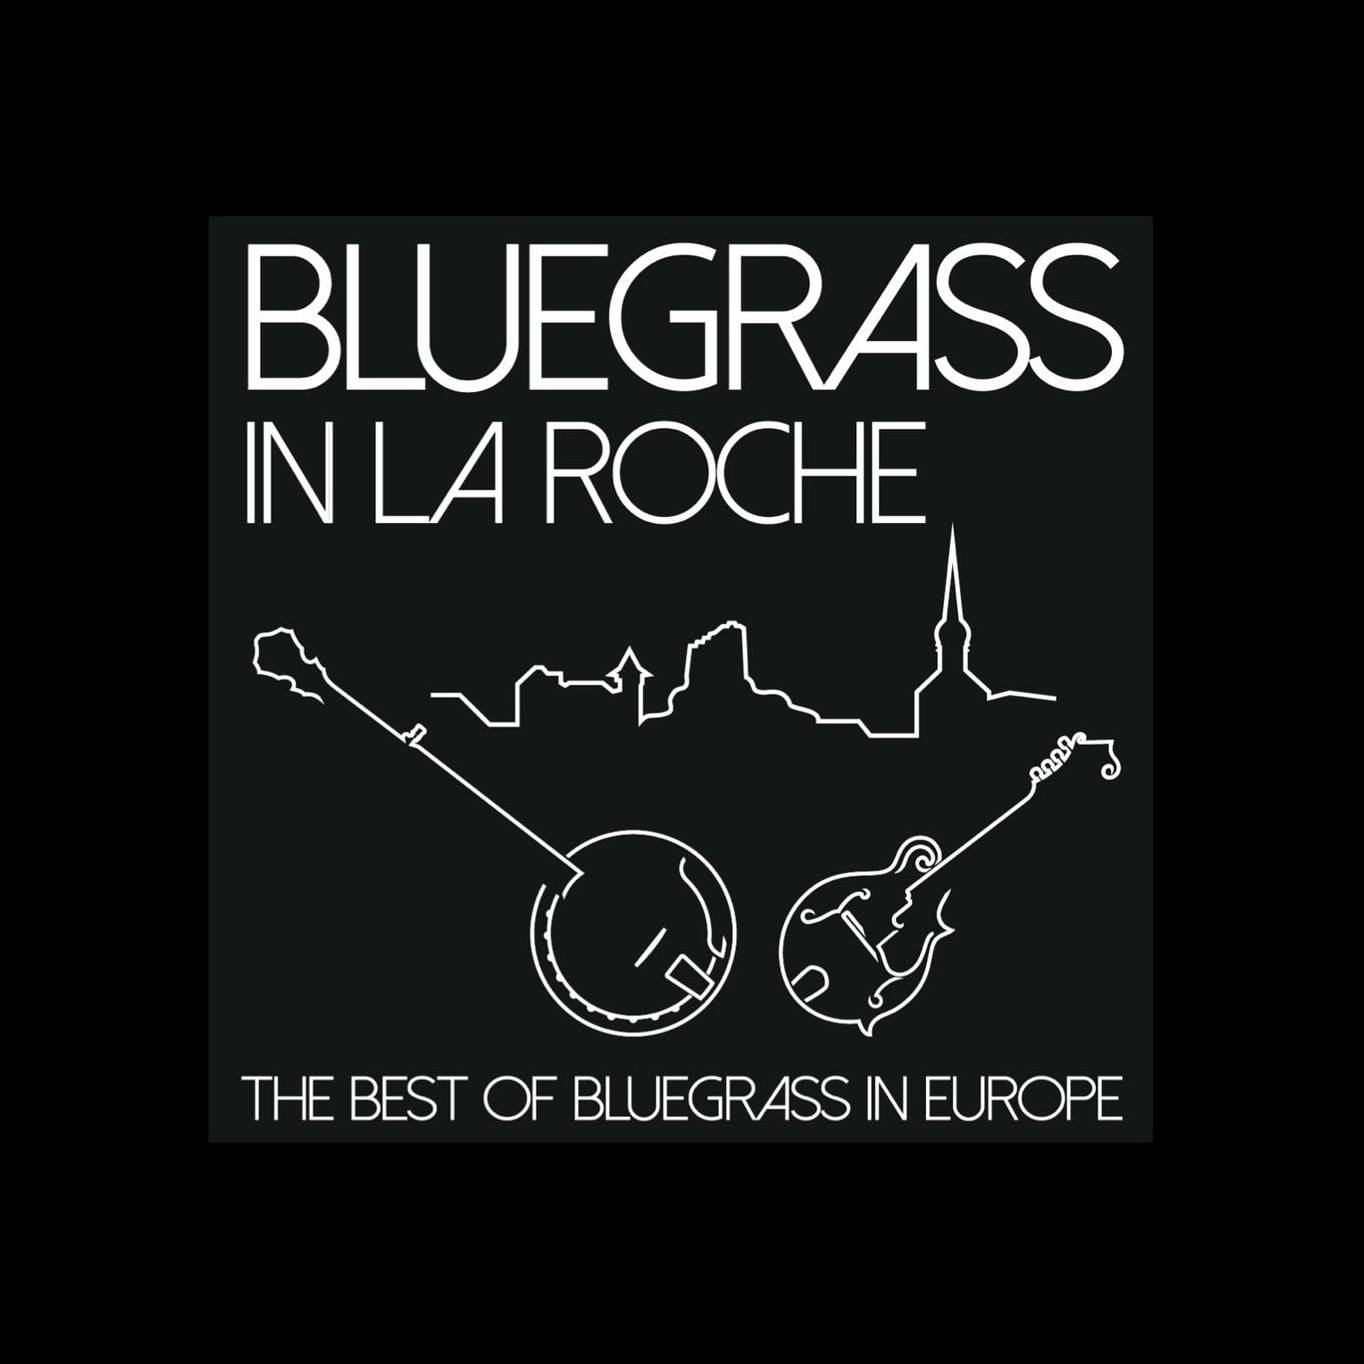 La Roche festival bluegrass